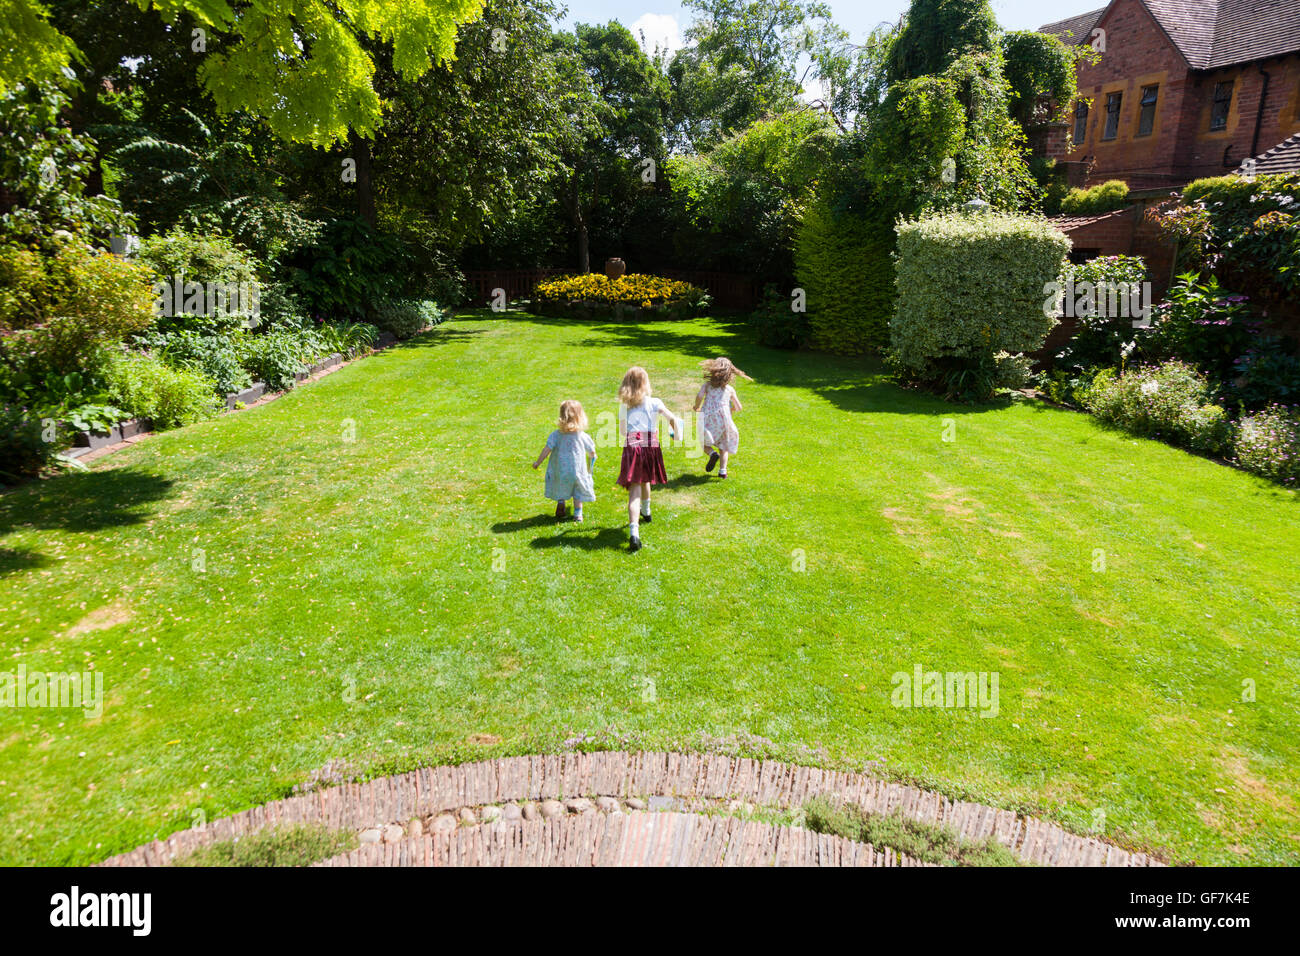 Greyfriars Haus und Garten mit 3 Kinder / kids / kid läuft & spielen auf der Wiese im Garten Rasen. Mönch St, Worcester. UK Stockfoto